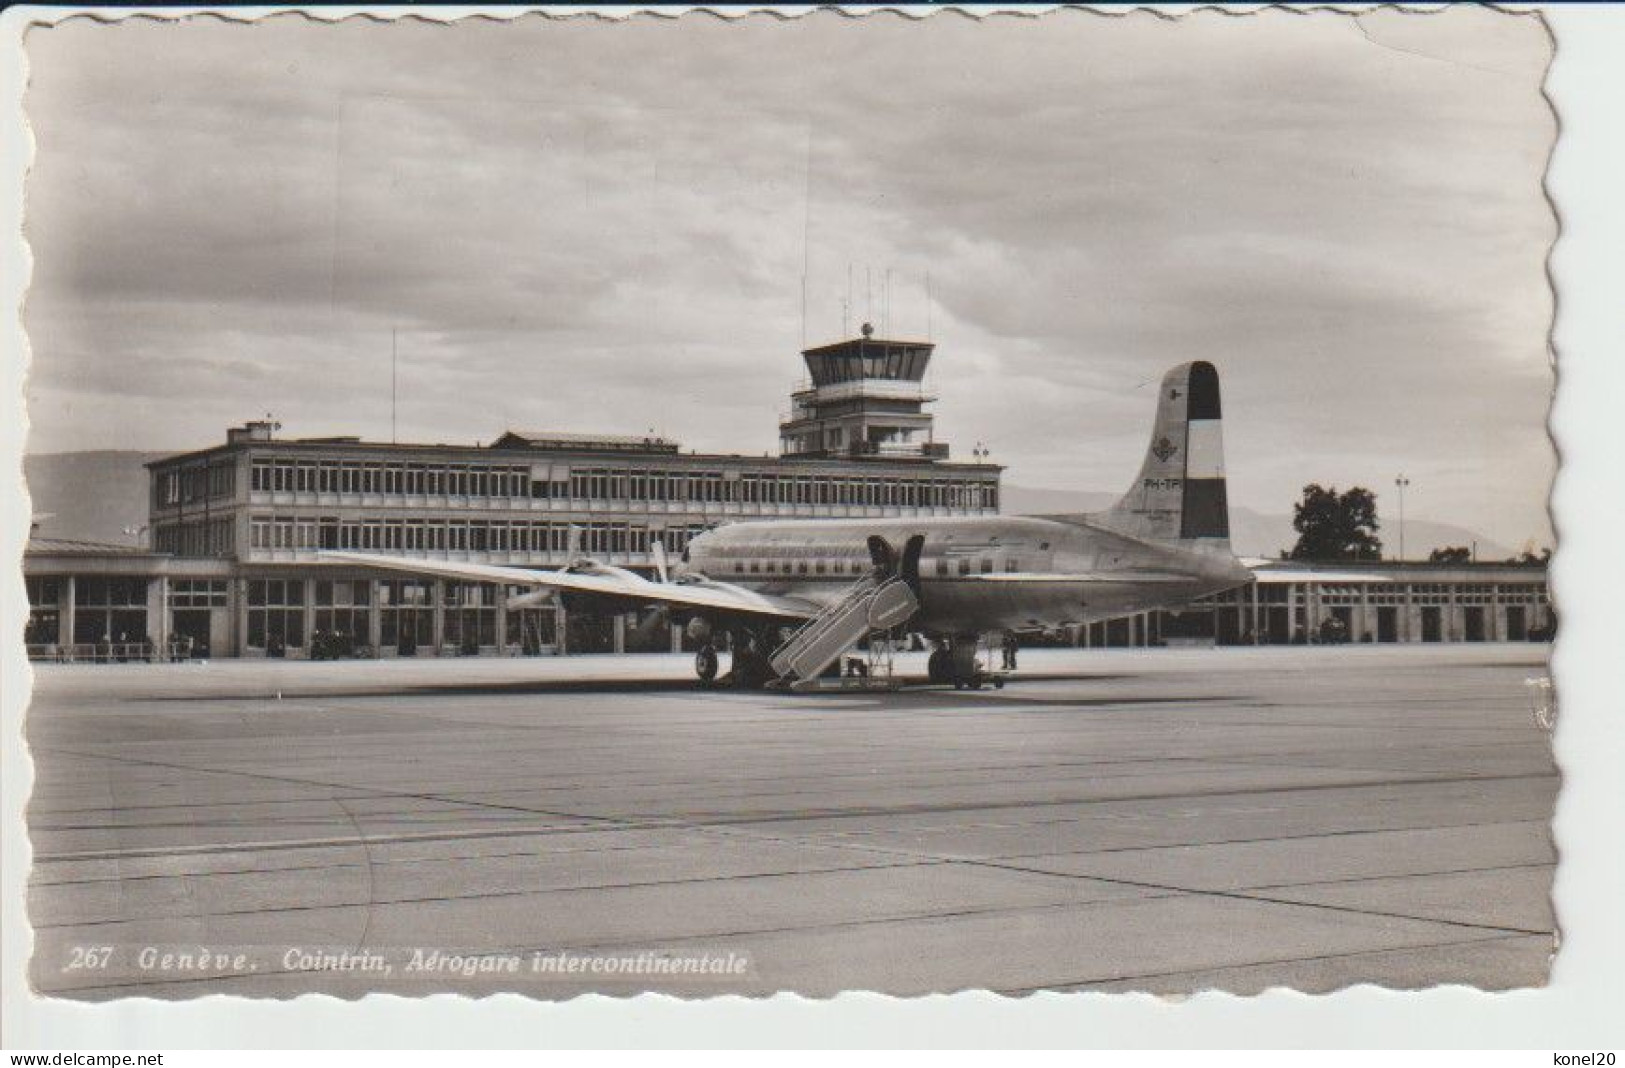 Vintage Rppc KLM K.L.M. Douglas Dc-6 Aircraft @ Geneve Airport - 1919-1938: Entre Guerres